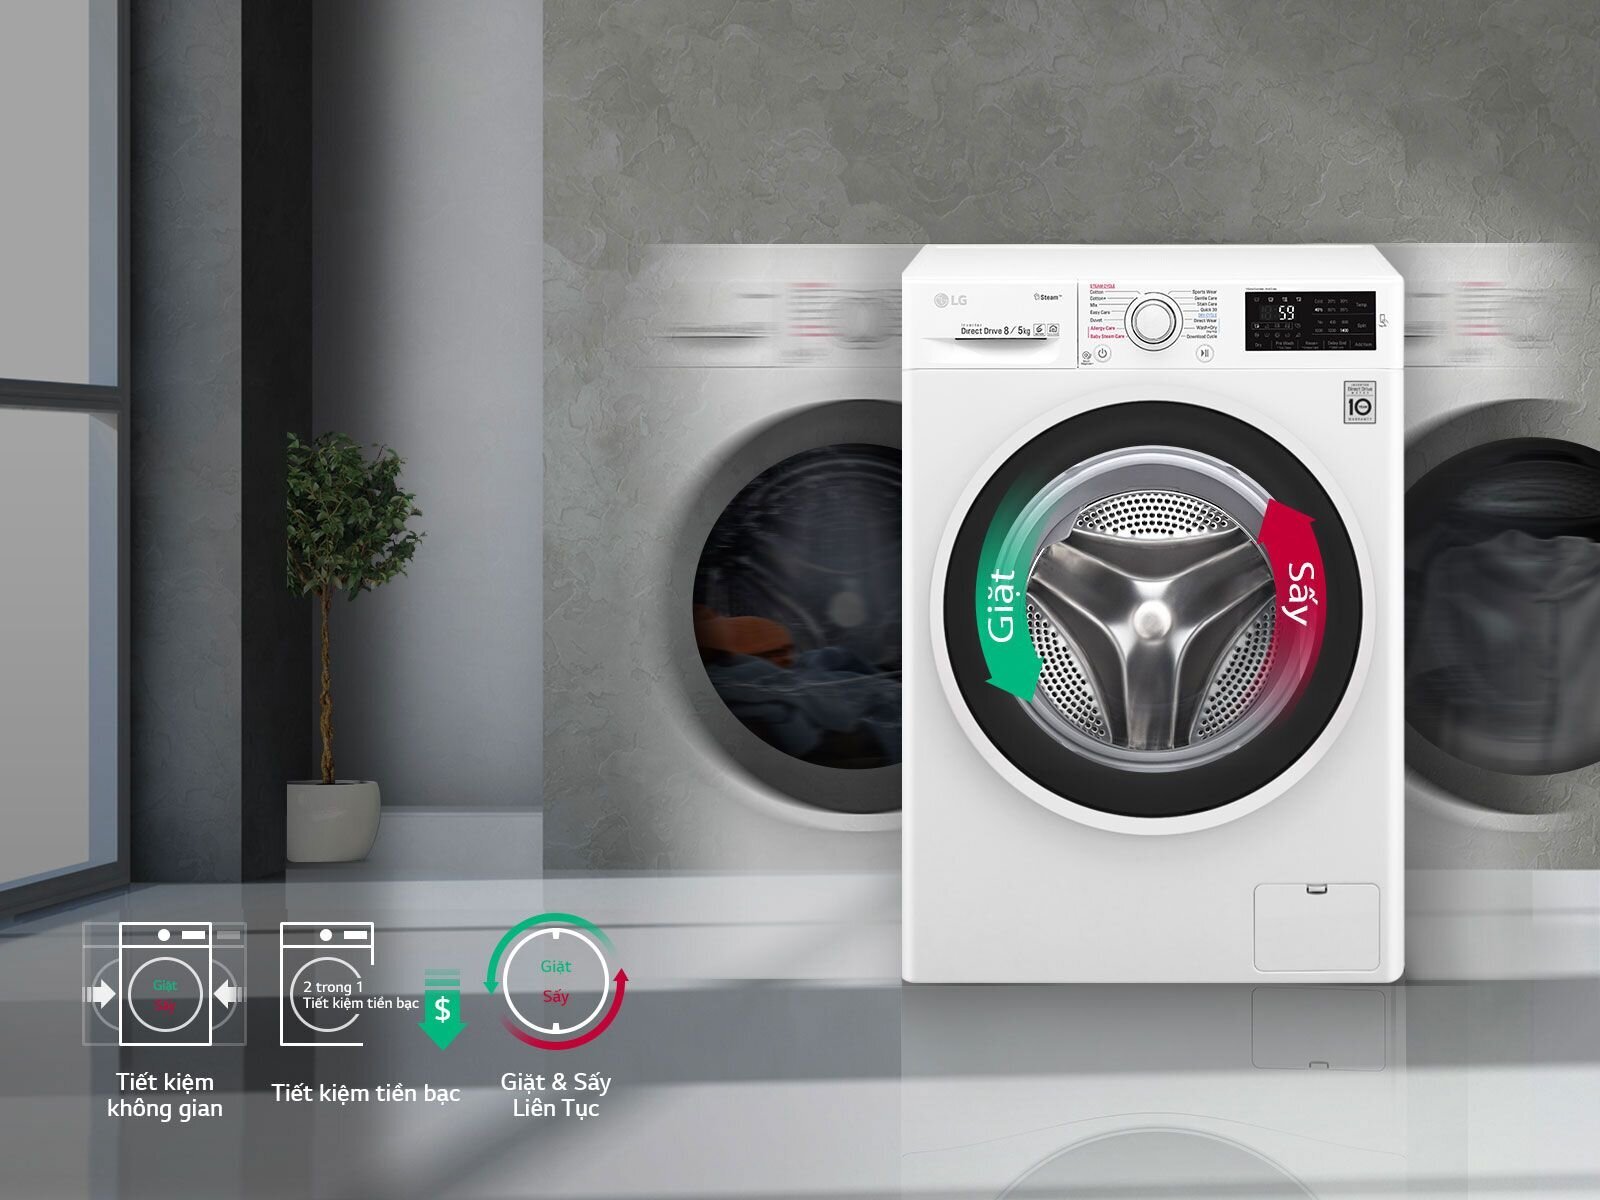 Máy giặt sấy Electrolux có thể điều chỉnh chế độ giặt linh hoạt